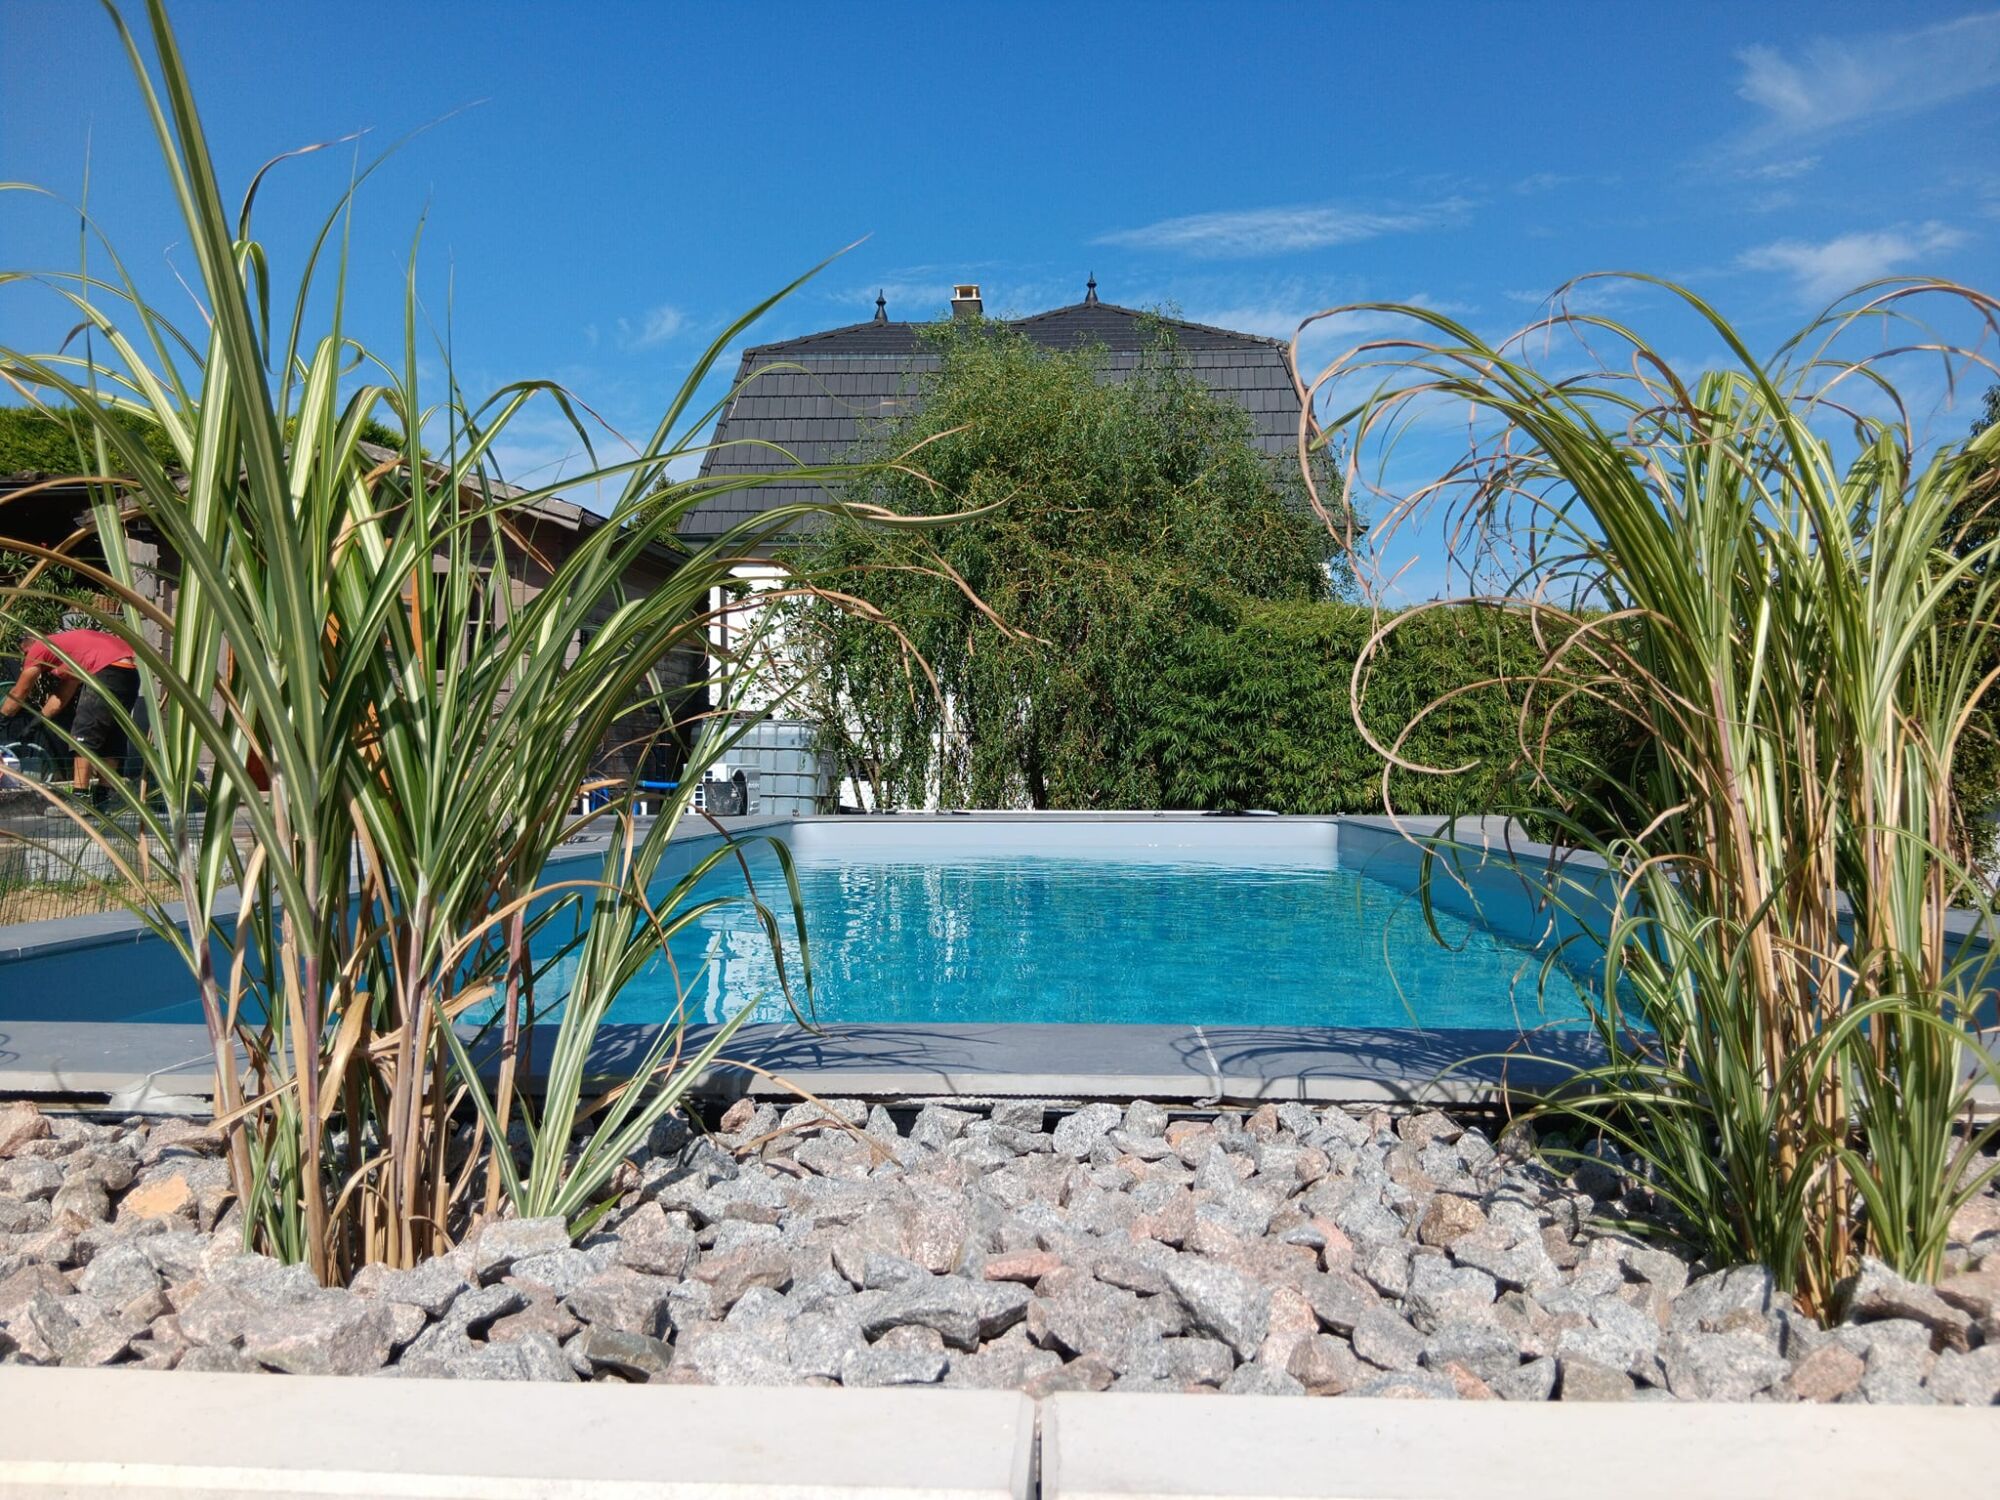 Concevez la piscine de vos rêves avec CG Concept Paysage et Mondial Piscine à ASPACH et dans le Haut-Rhin. Kingersheim 0